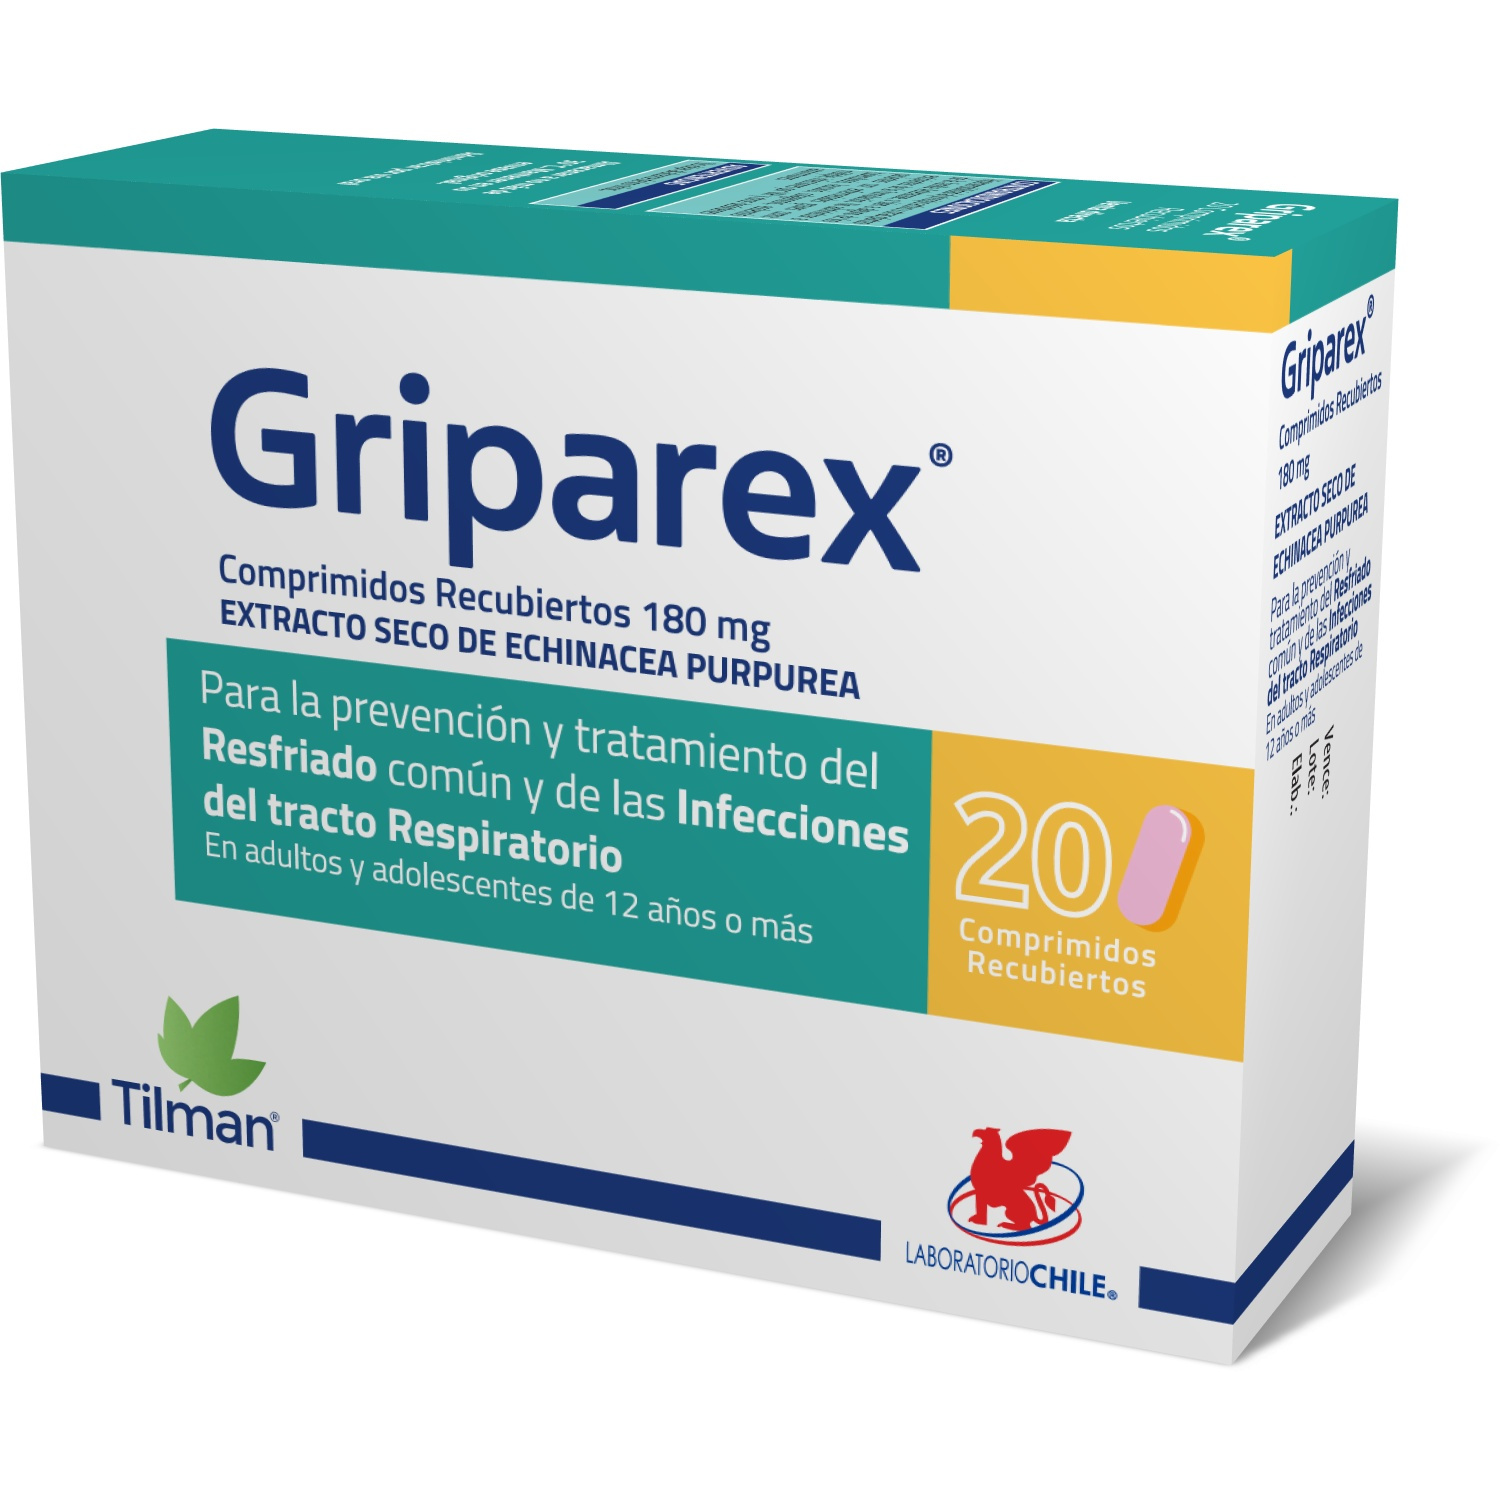 Griparex®